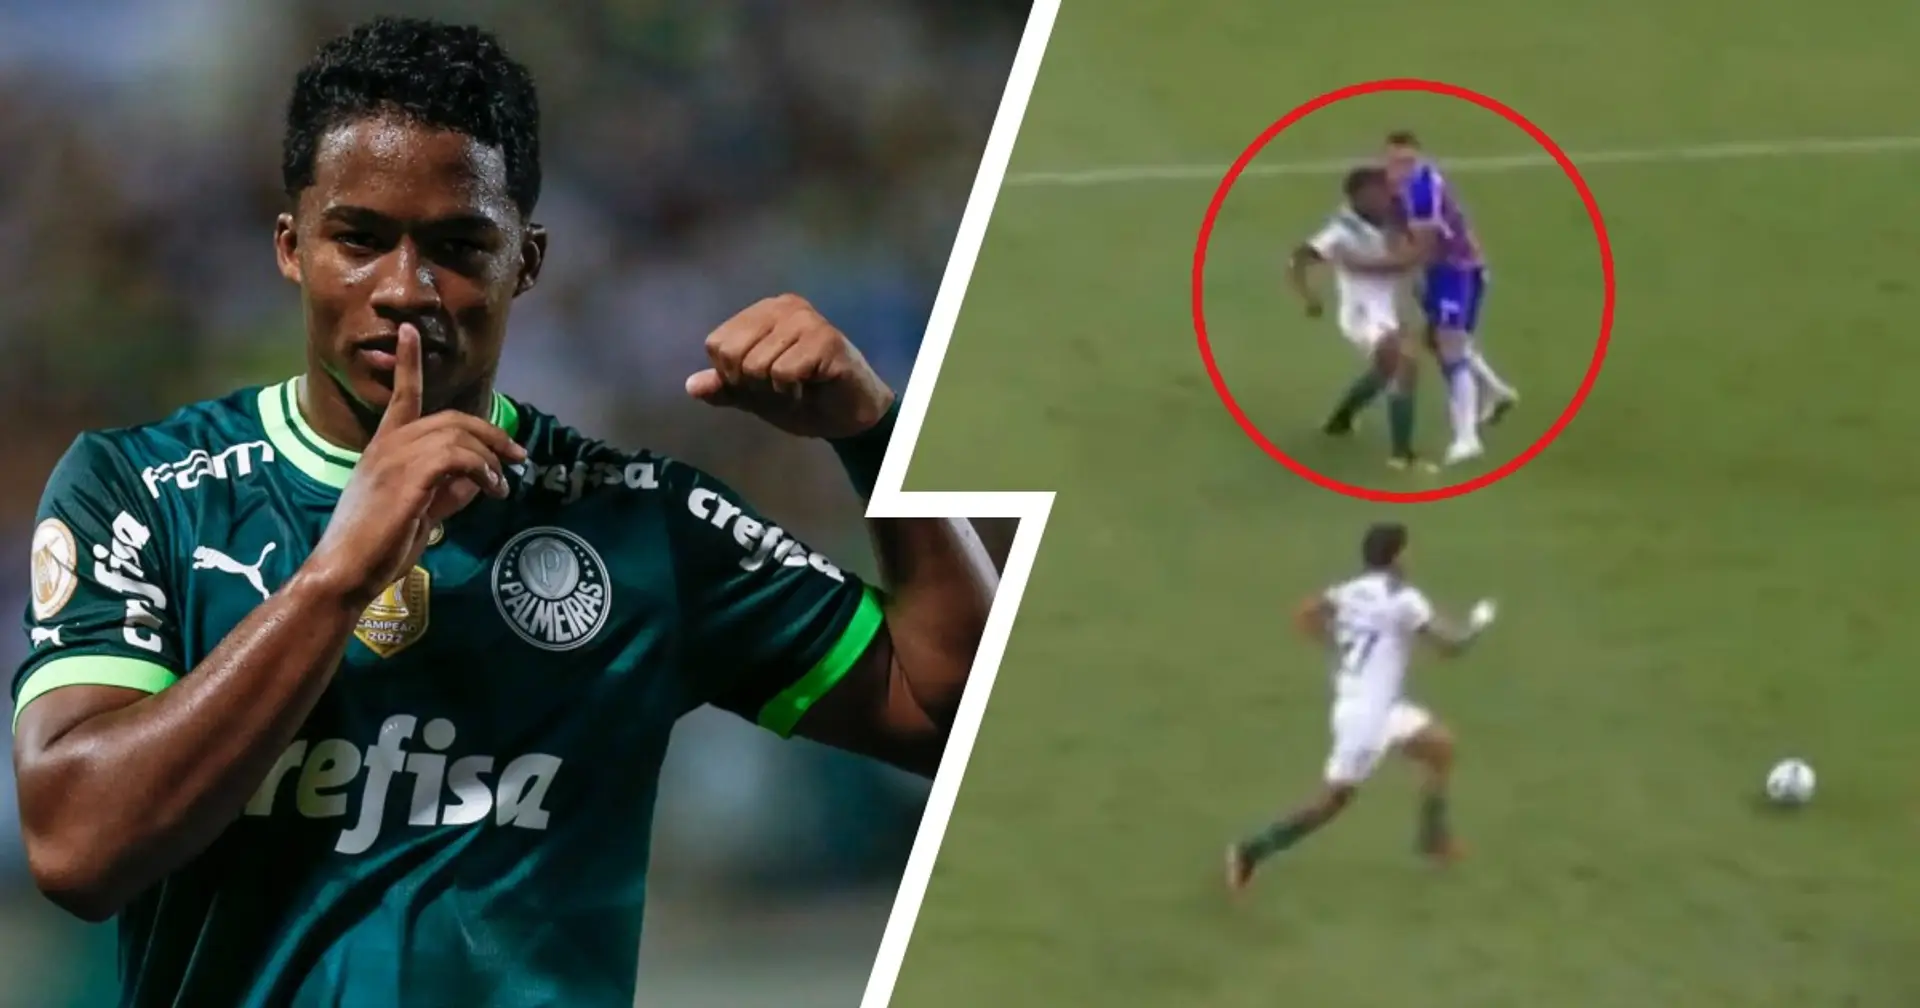 Endrick frappe son adversaire lors du match nul vs Palmeiras – prochaine action repérée